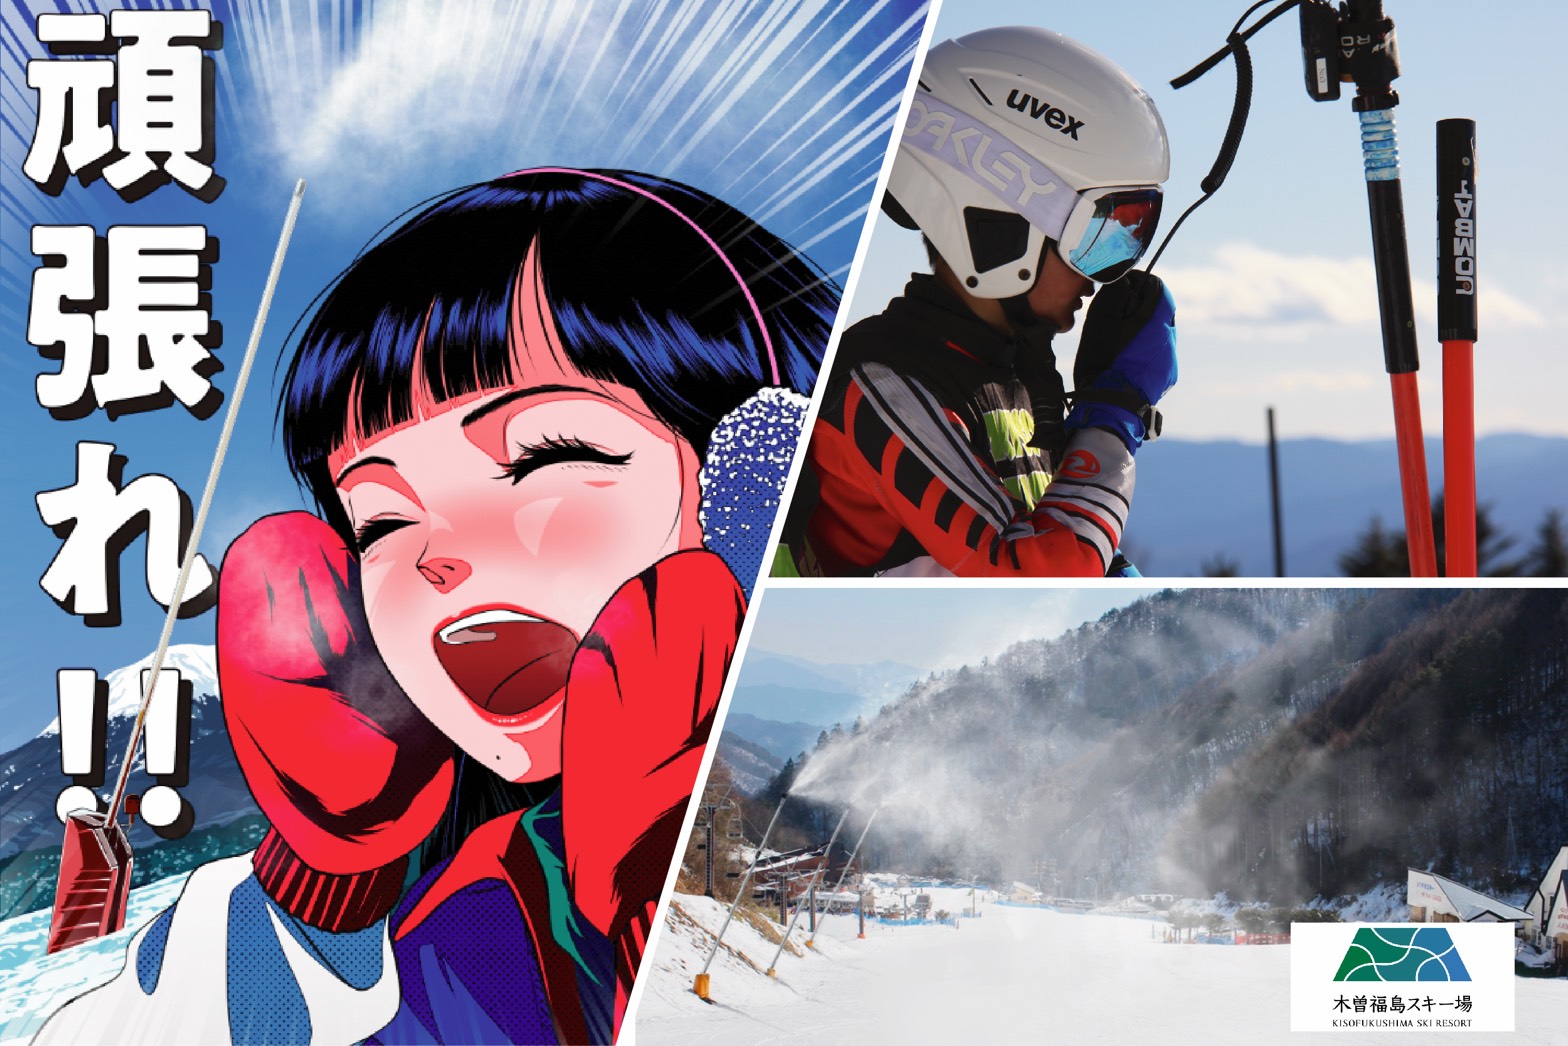 全てのスキーヤーのために 木曽福島スキー場 最高のゲレンデをつくるためのクラウドファンディングスタート 株式会社nationのプレスリリース